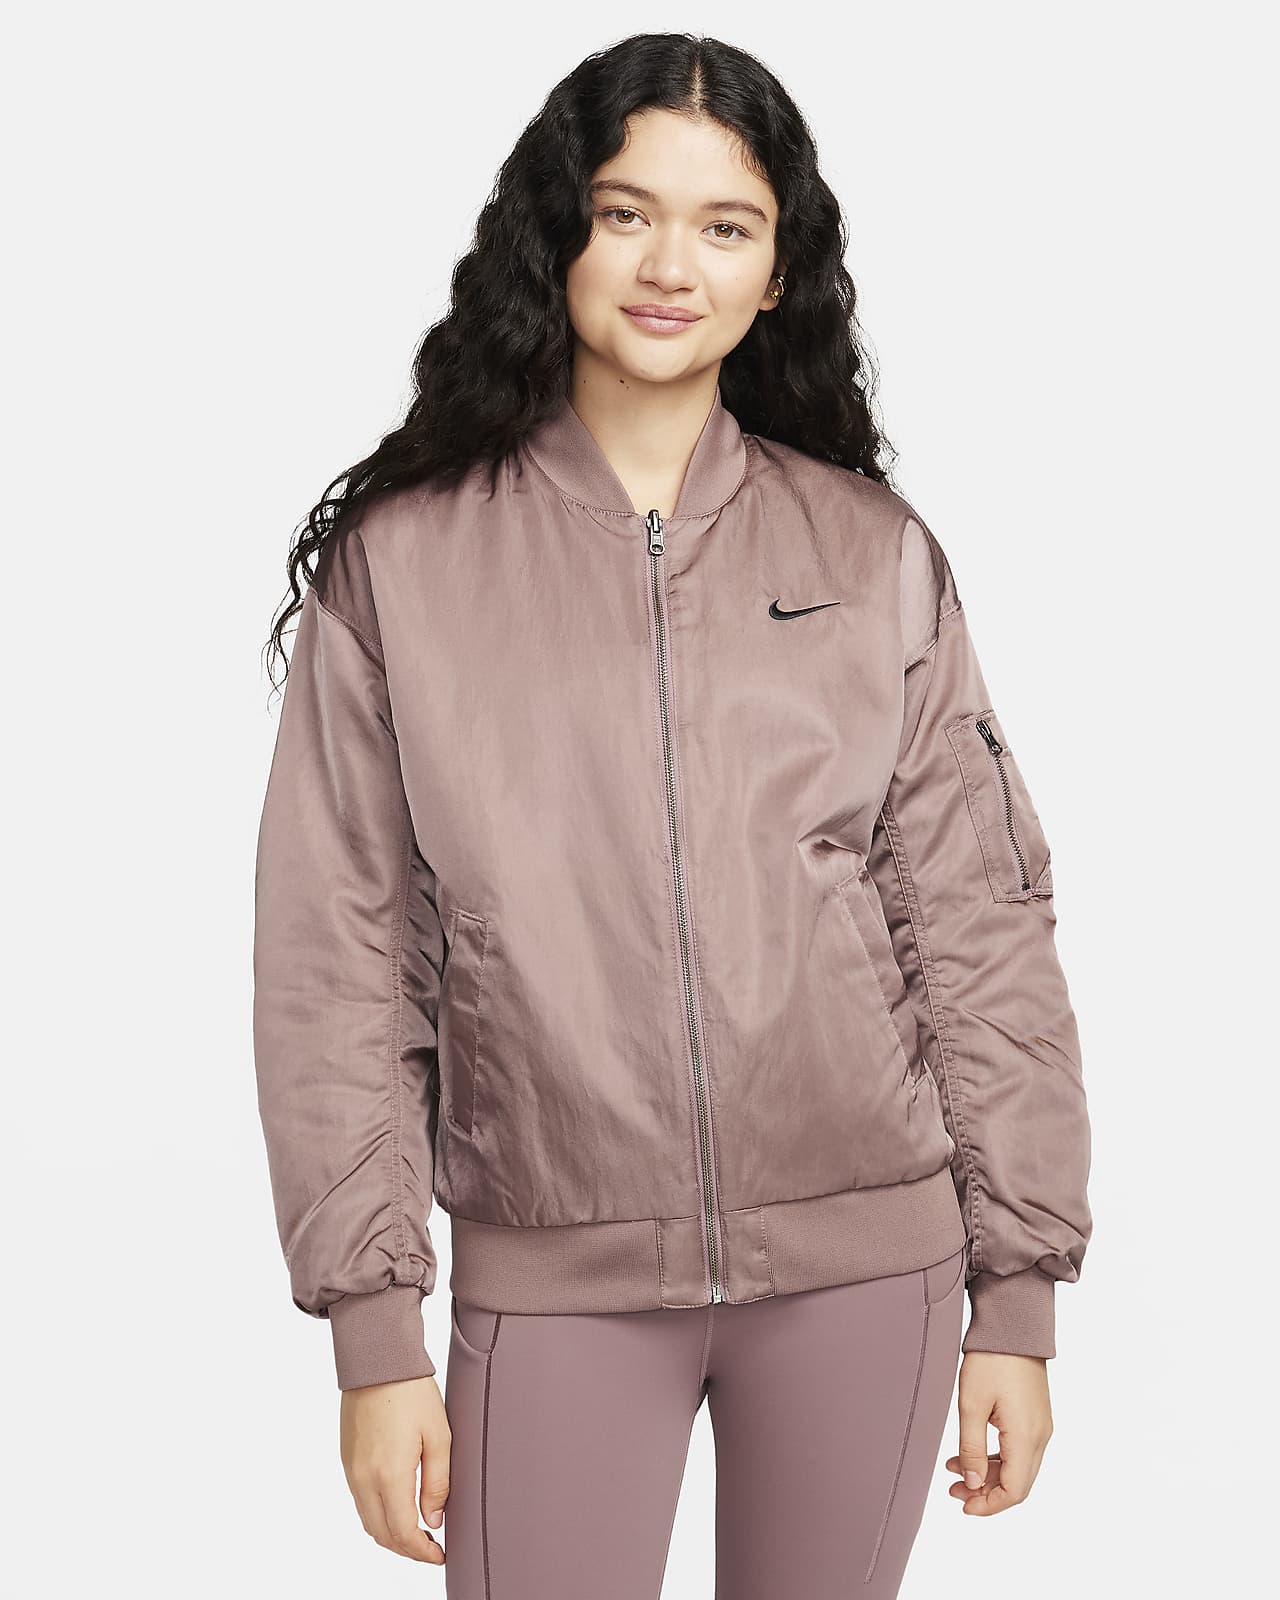 Nike Sportswear Women\'s Reversible Varsity Jacket. Bomber